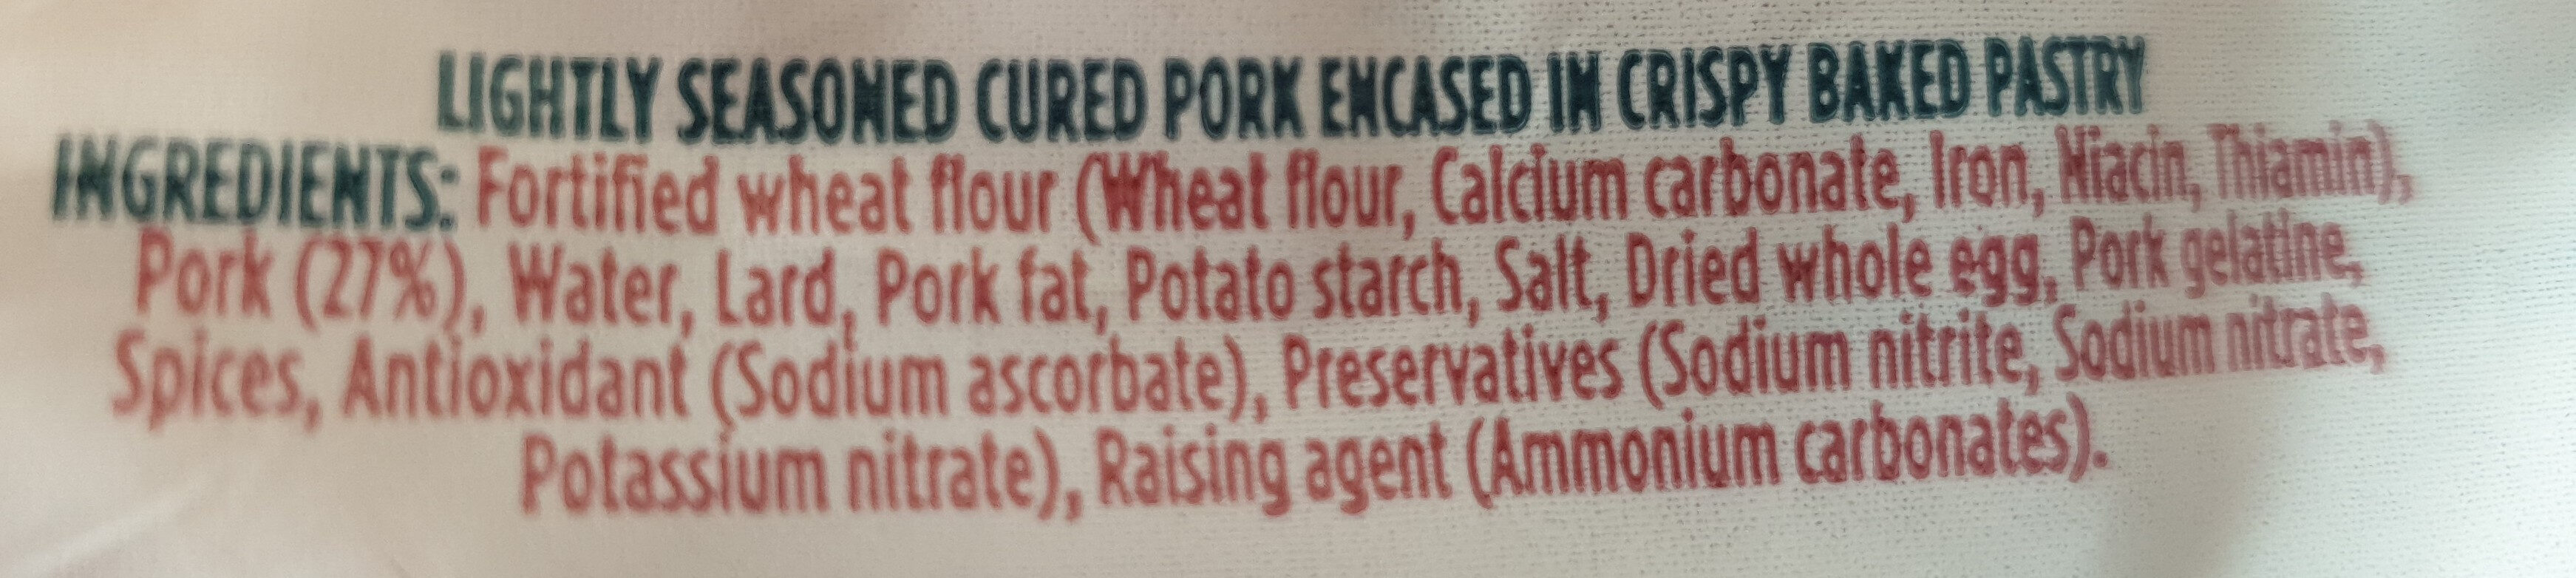 wale of pork pie - Ingredients